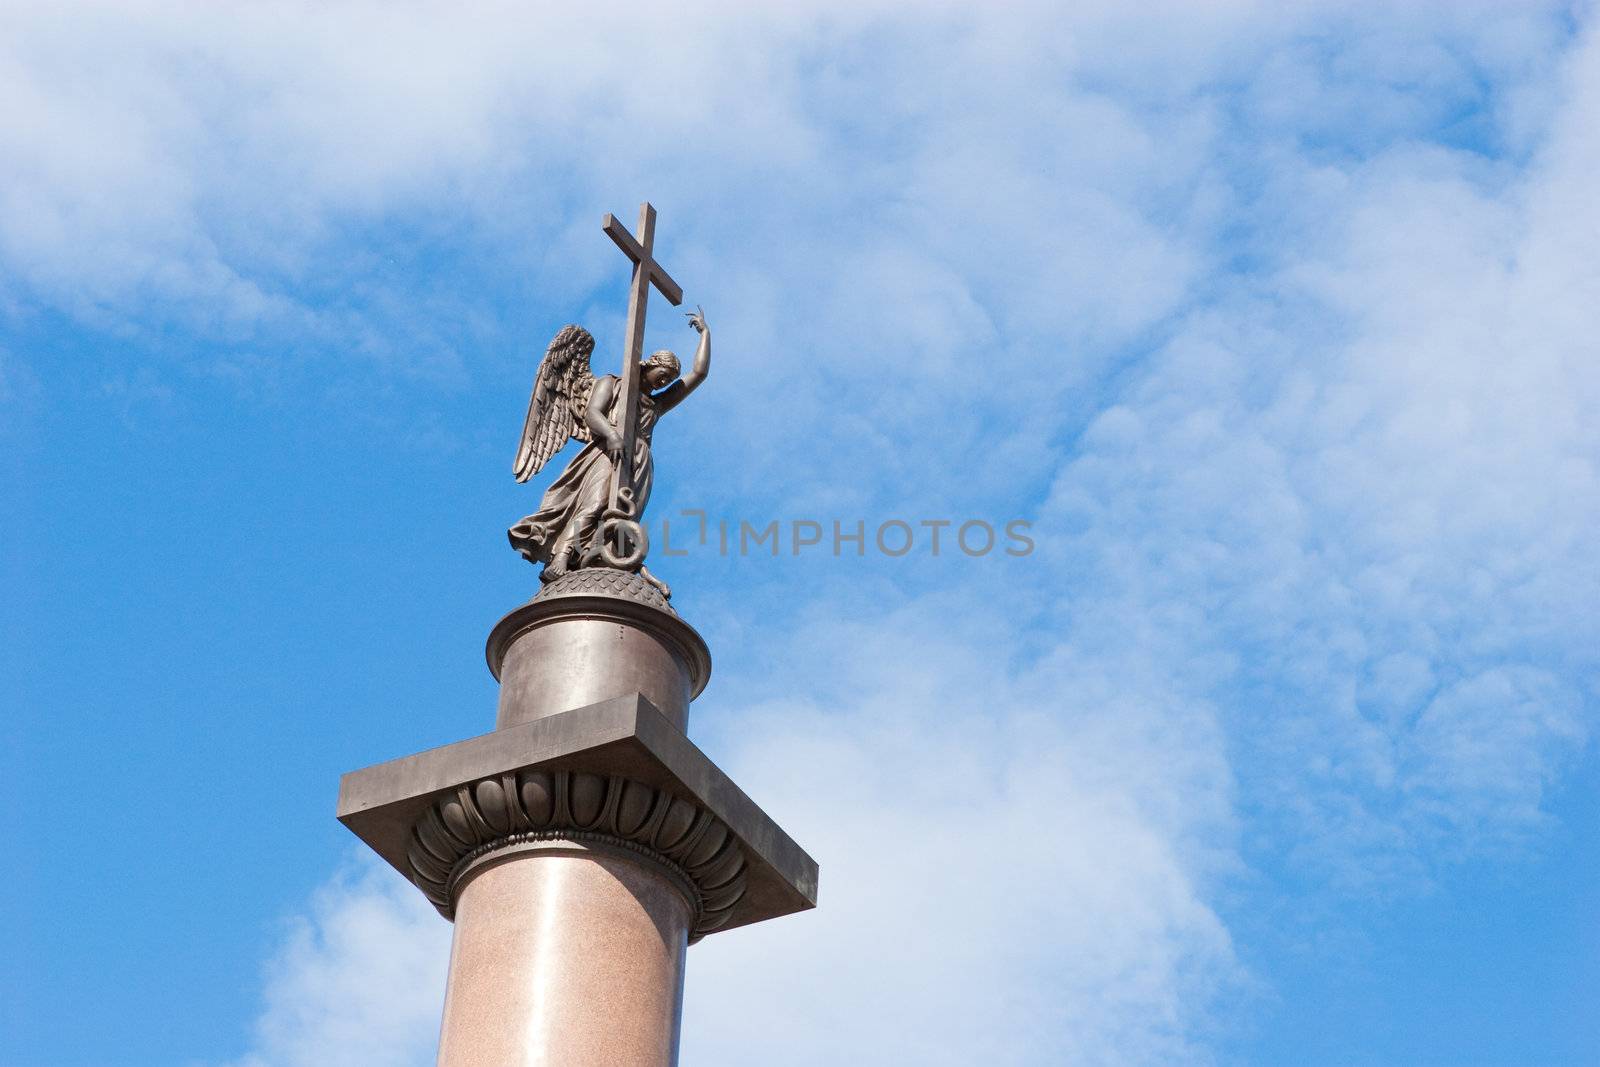 Top of the Alexander Column in Saint-Petersburg